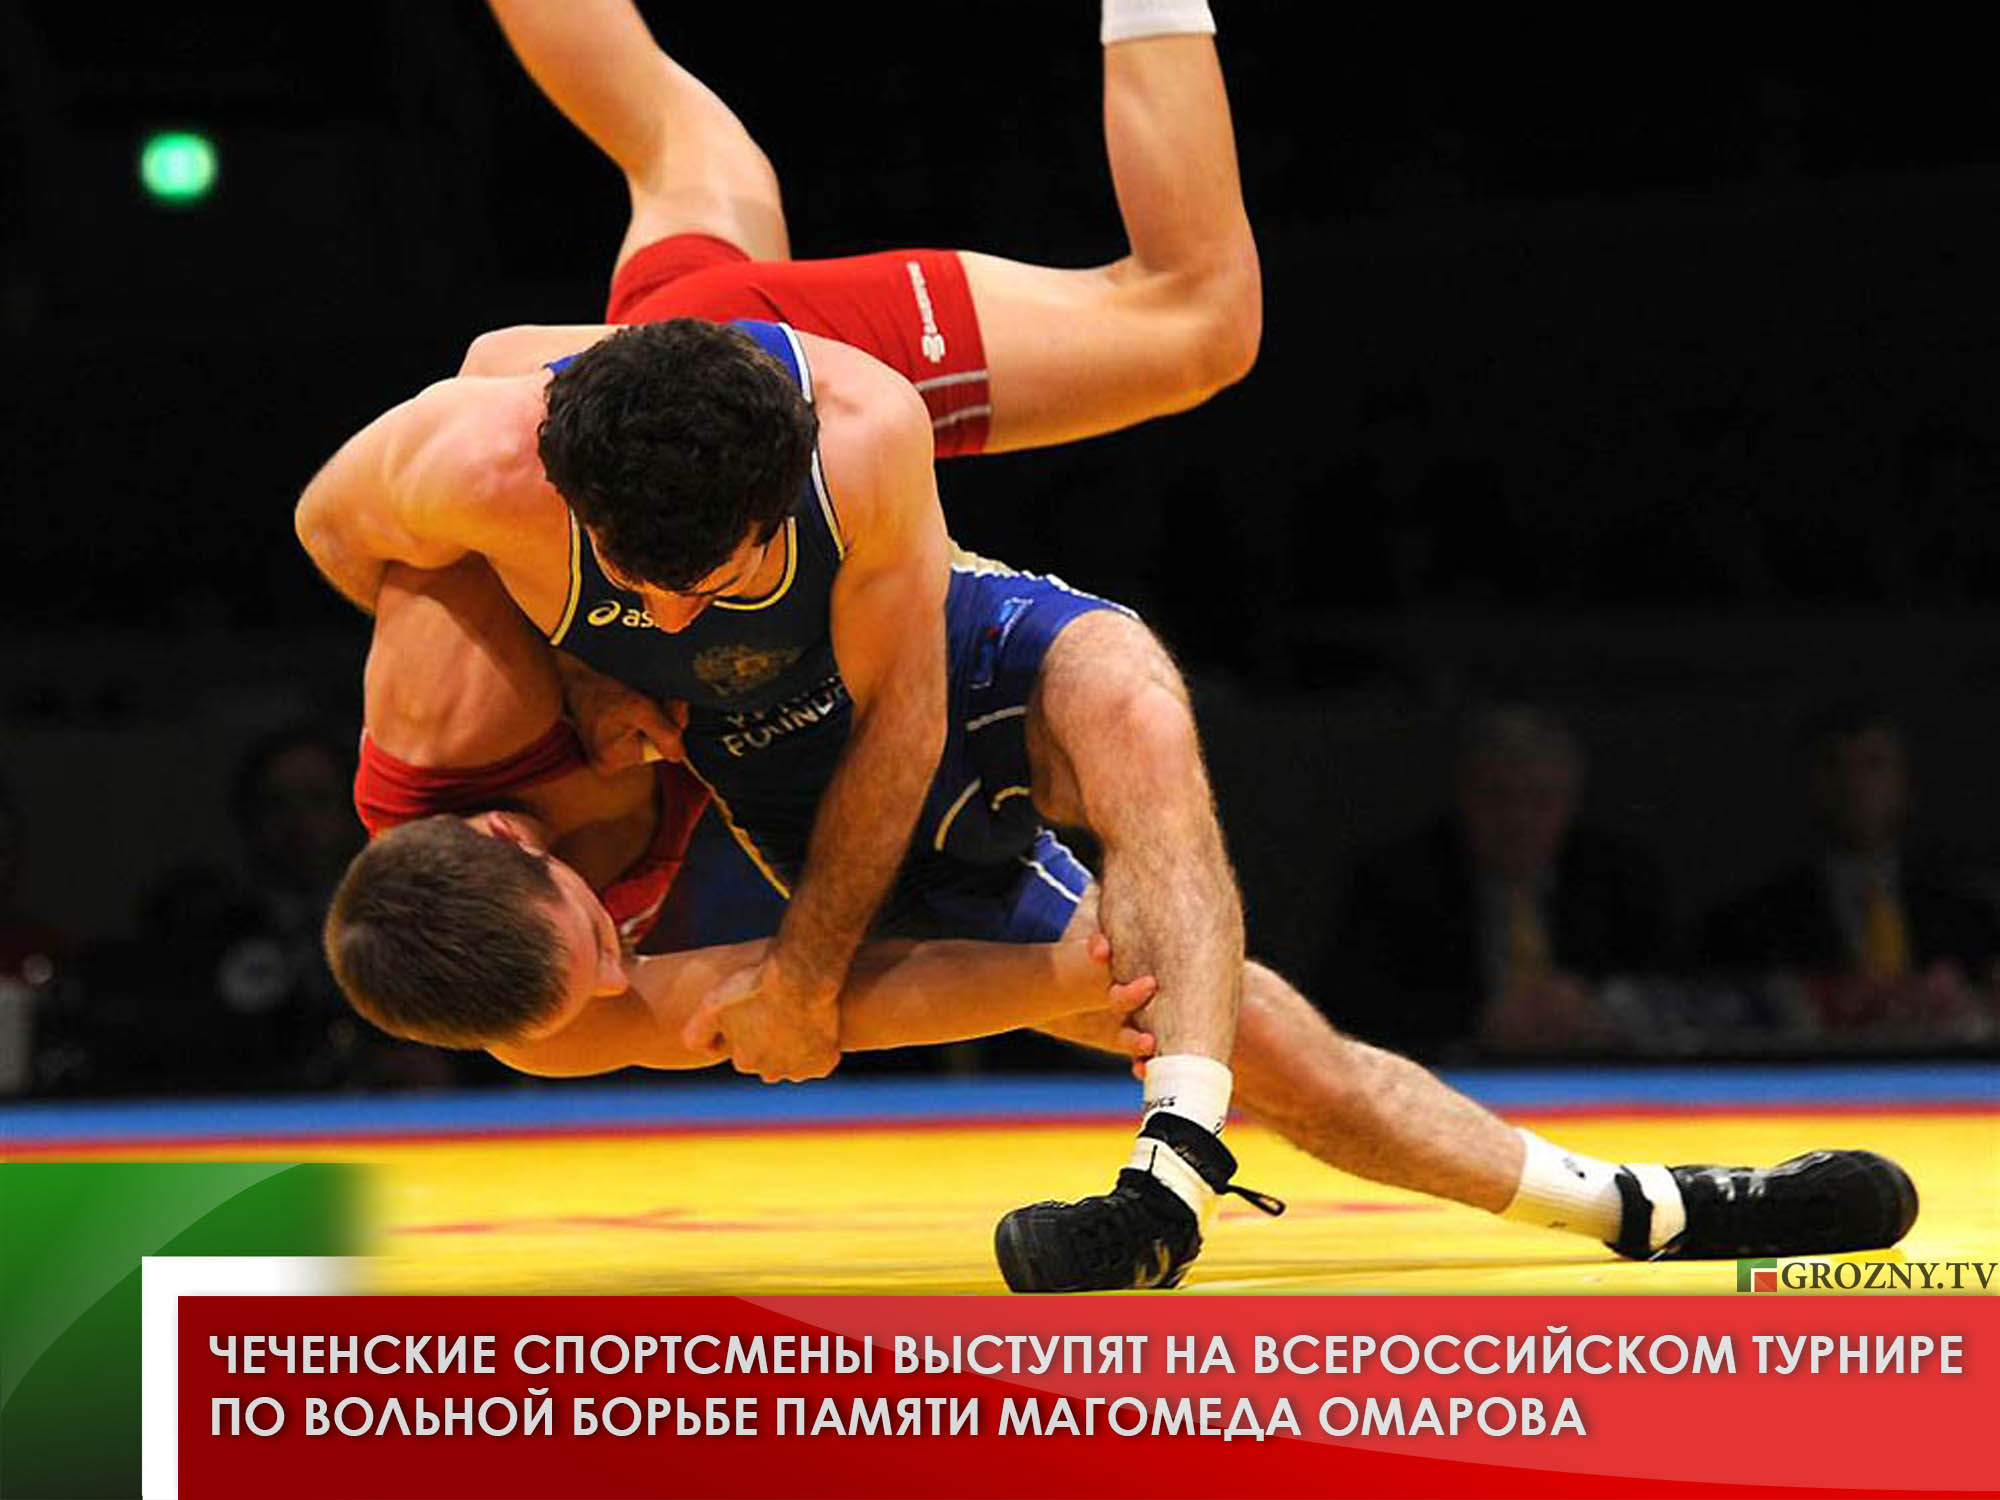 Чеченские спортсмены выступят на Всероссийском турнире по вольной борьбе памяти Магомеда Омарова 